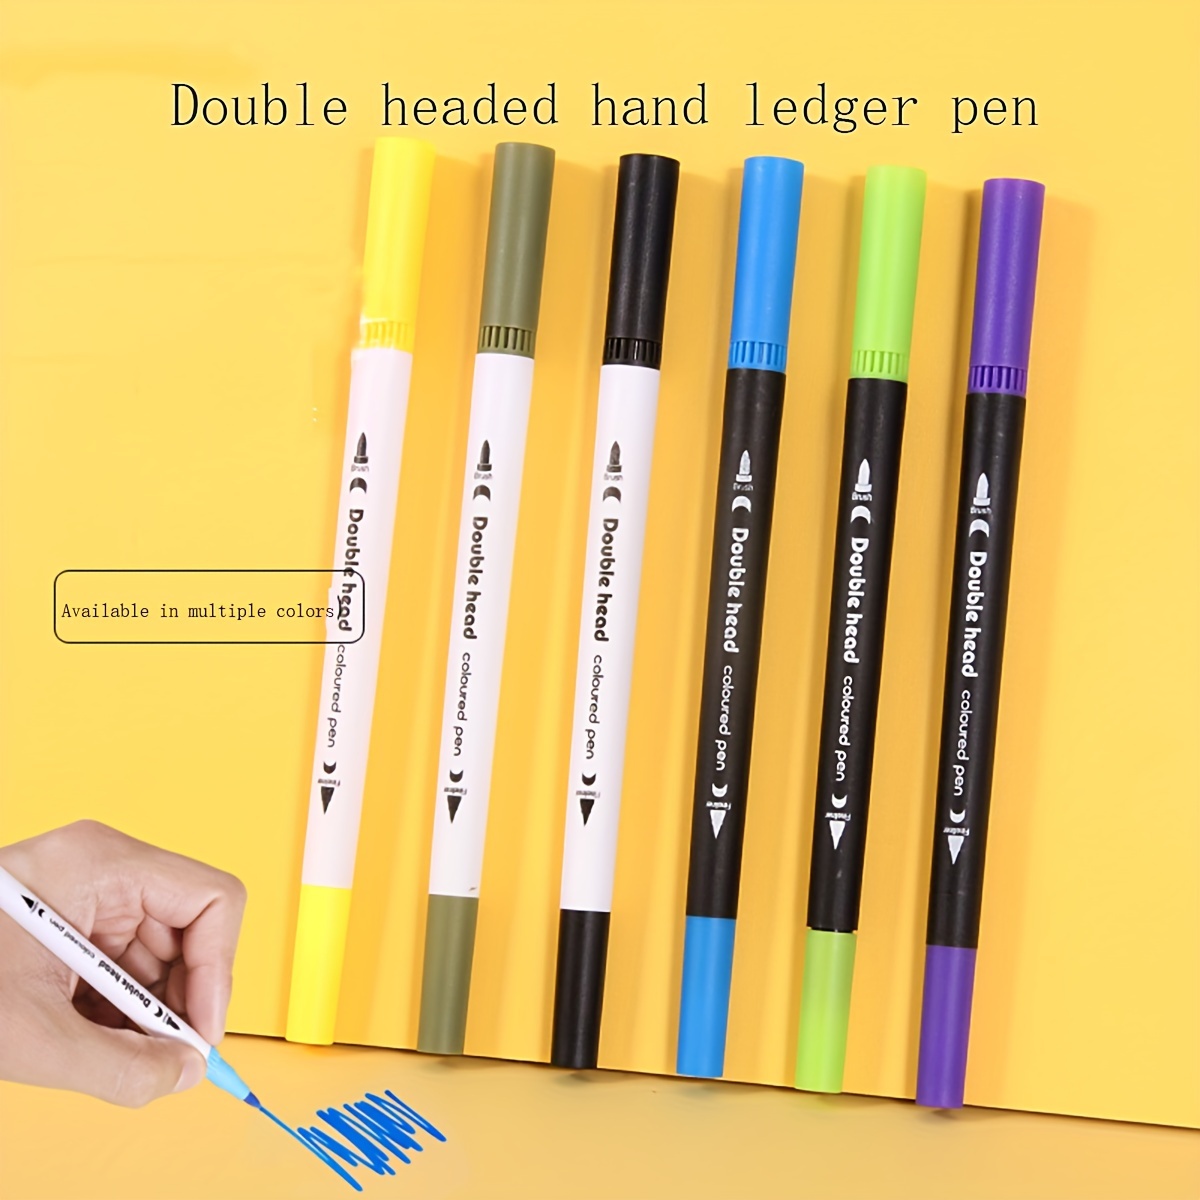 12 color double head watercolor pen